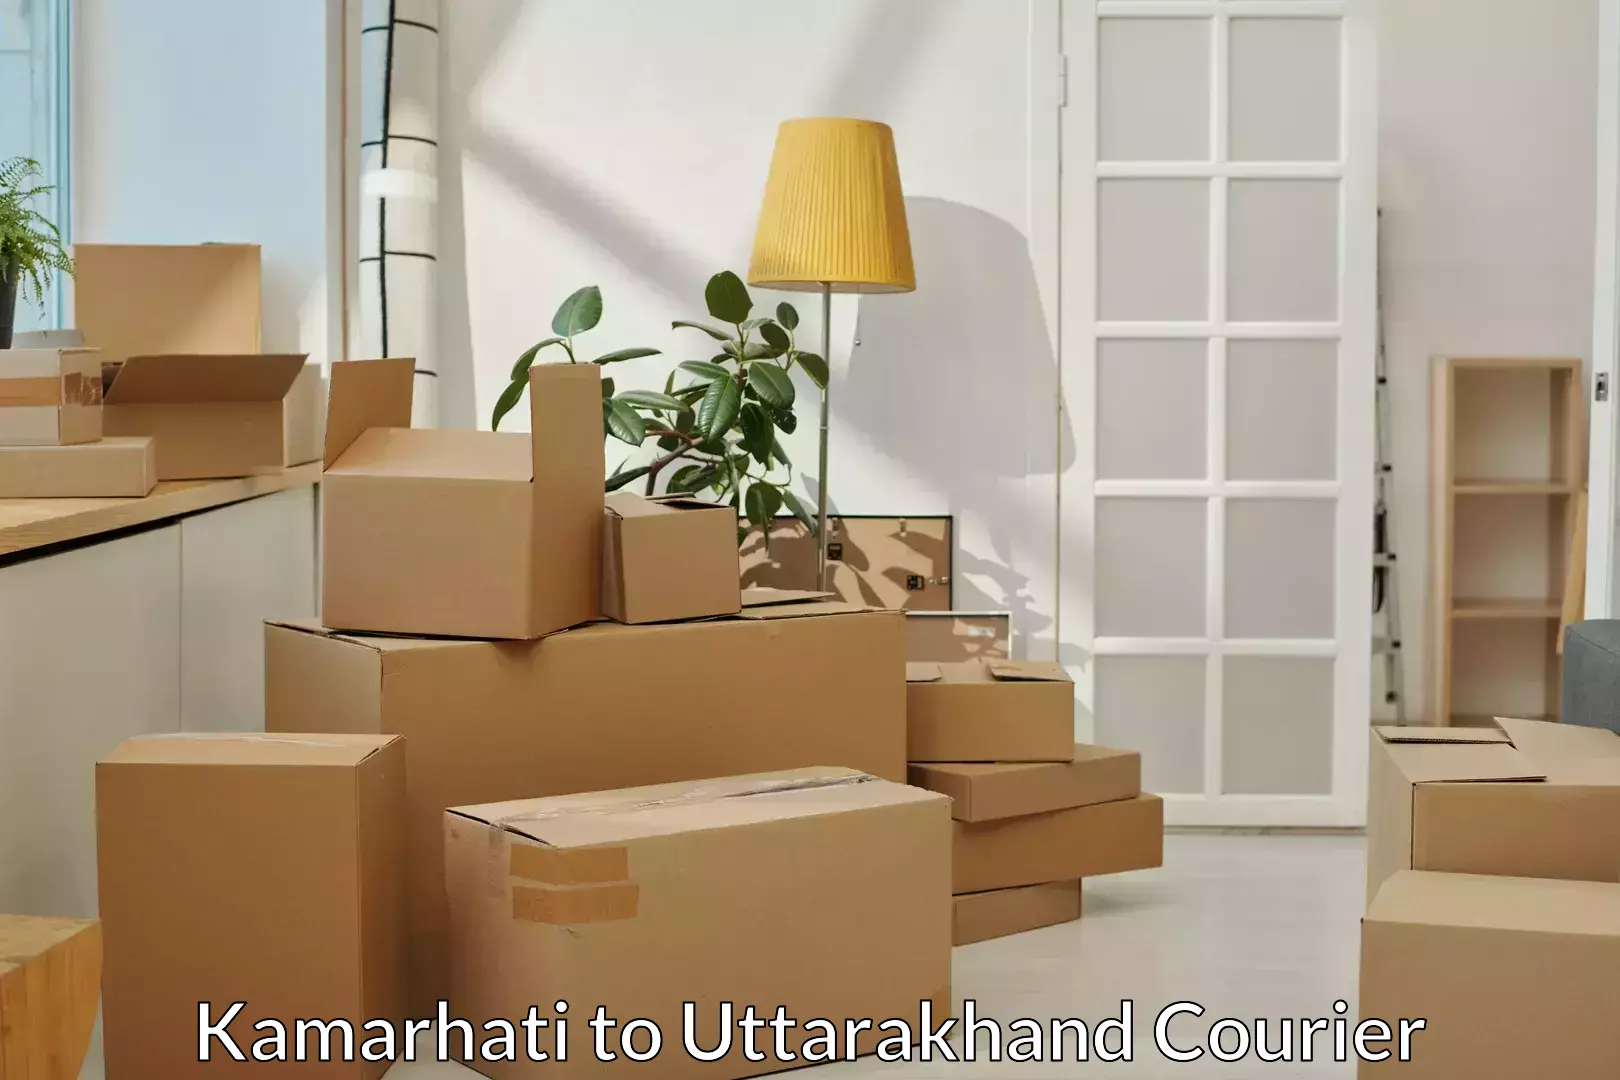 Furniture transport solutions Kamarhati to Kashipur